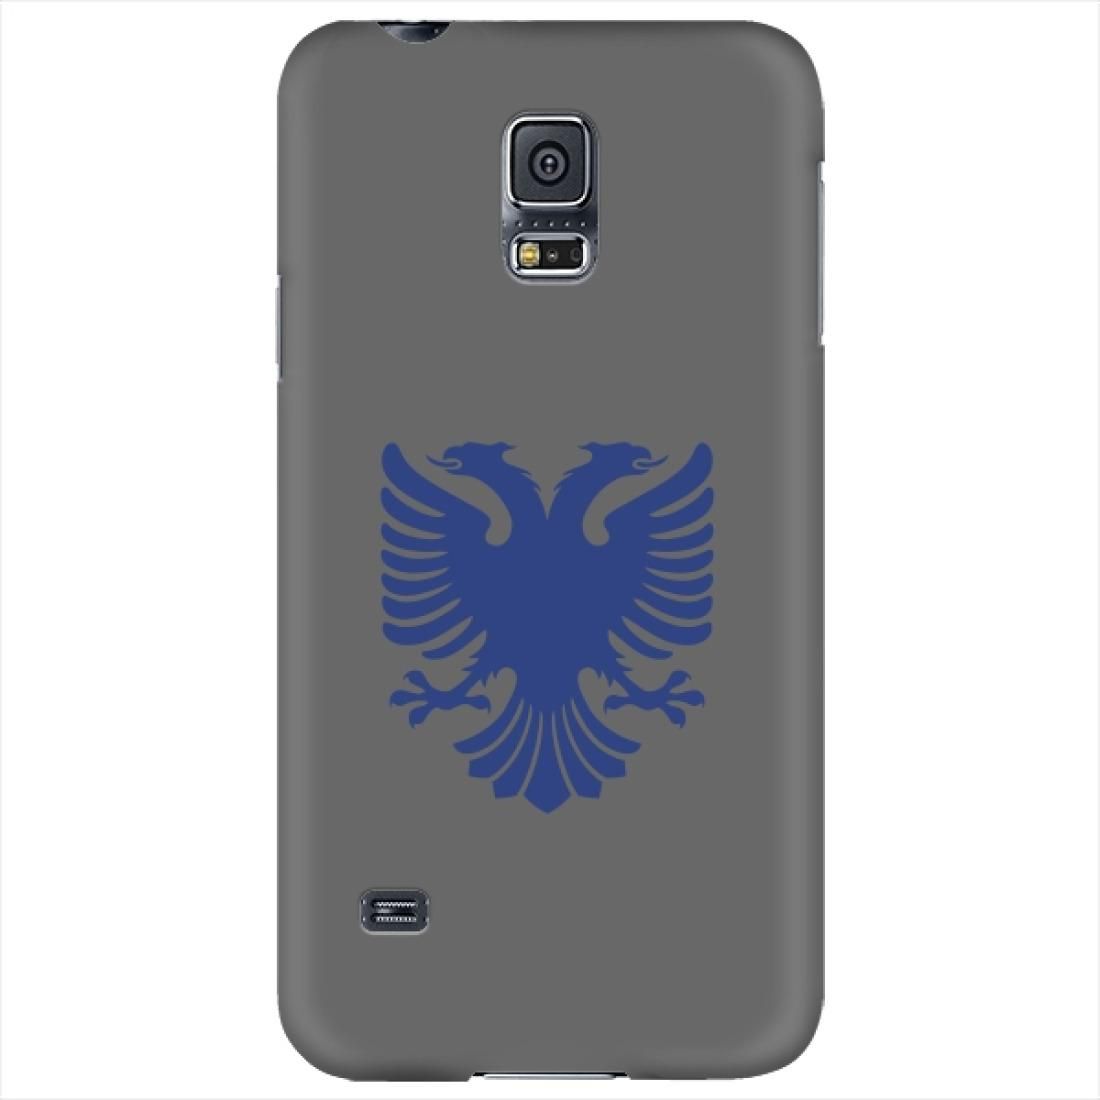 ستايليزد Stylizedd Samsung Galaxy S5 Premium Slim Snap case cover Matte Finish - Albanian Eagle